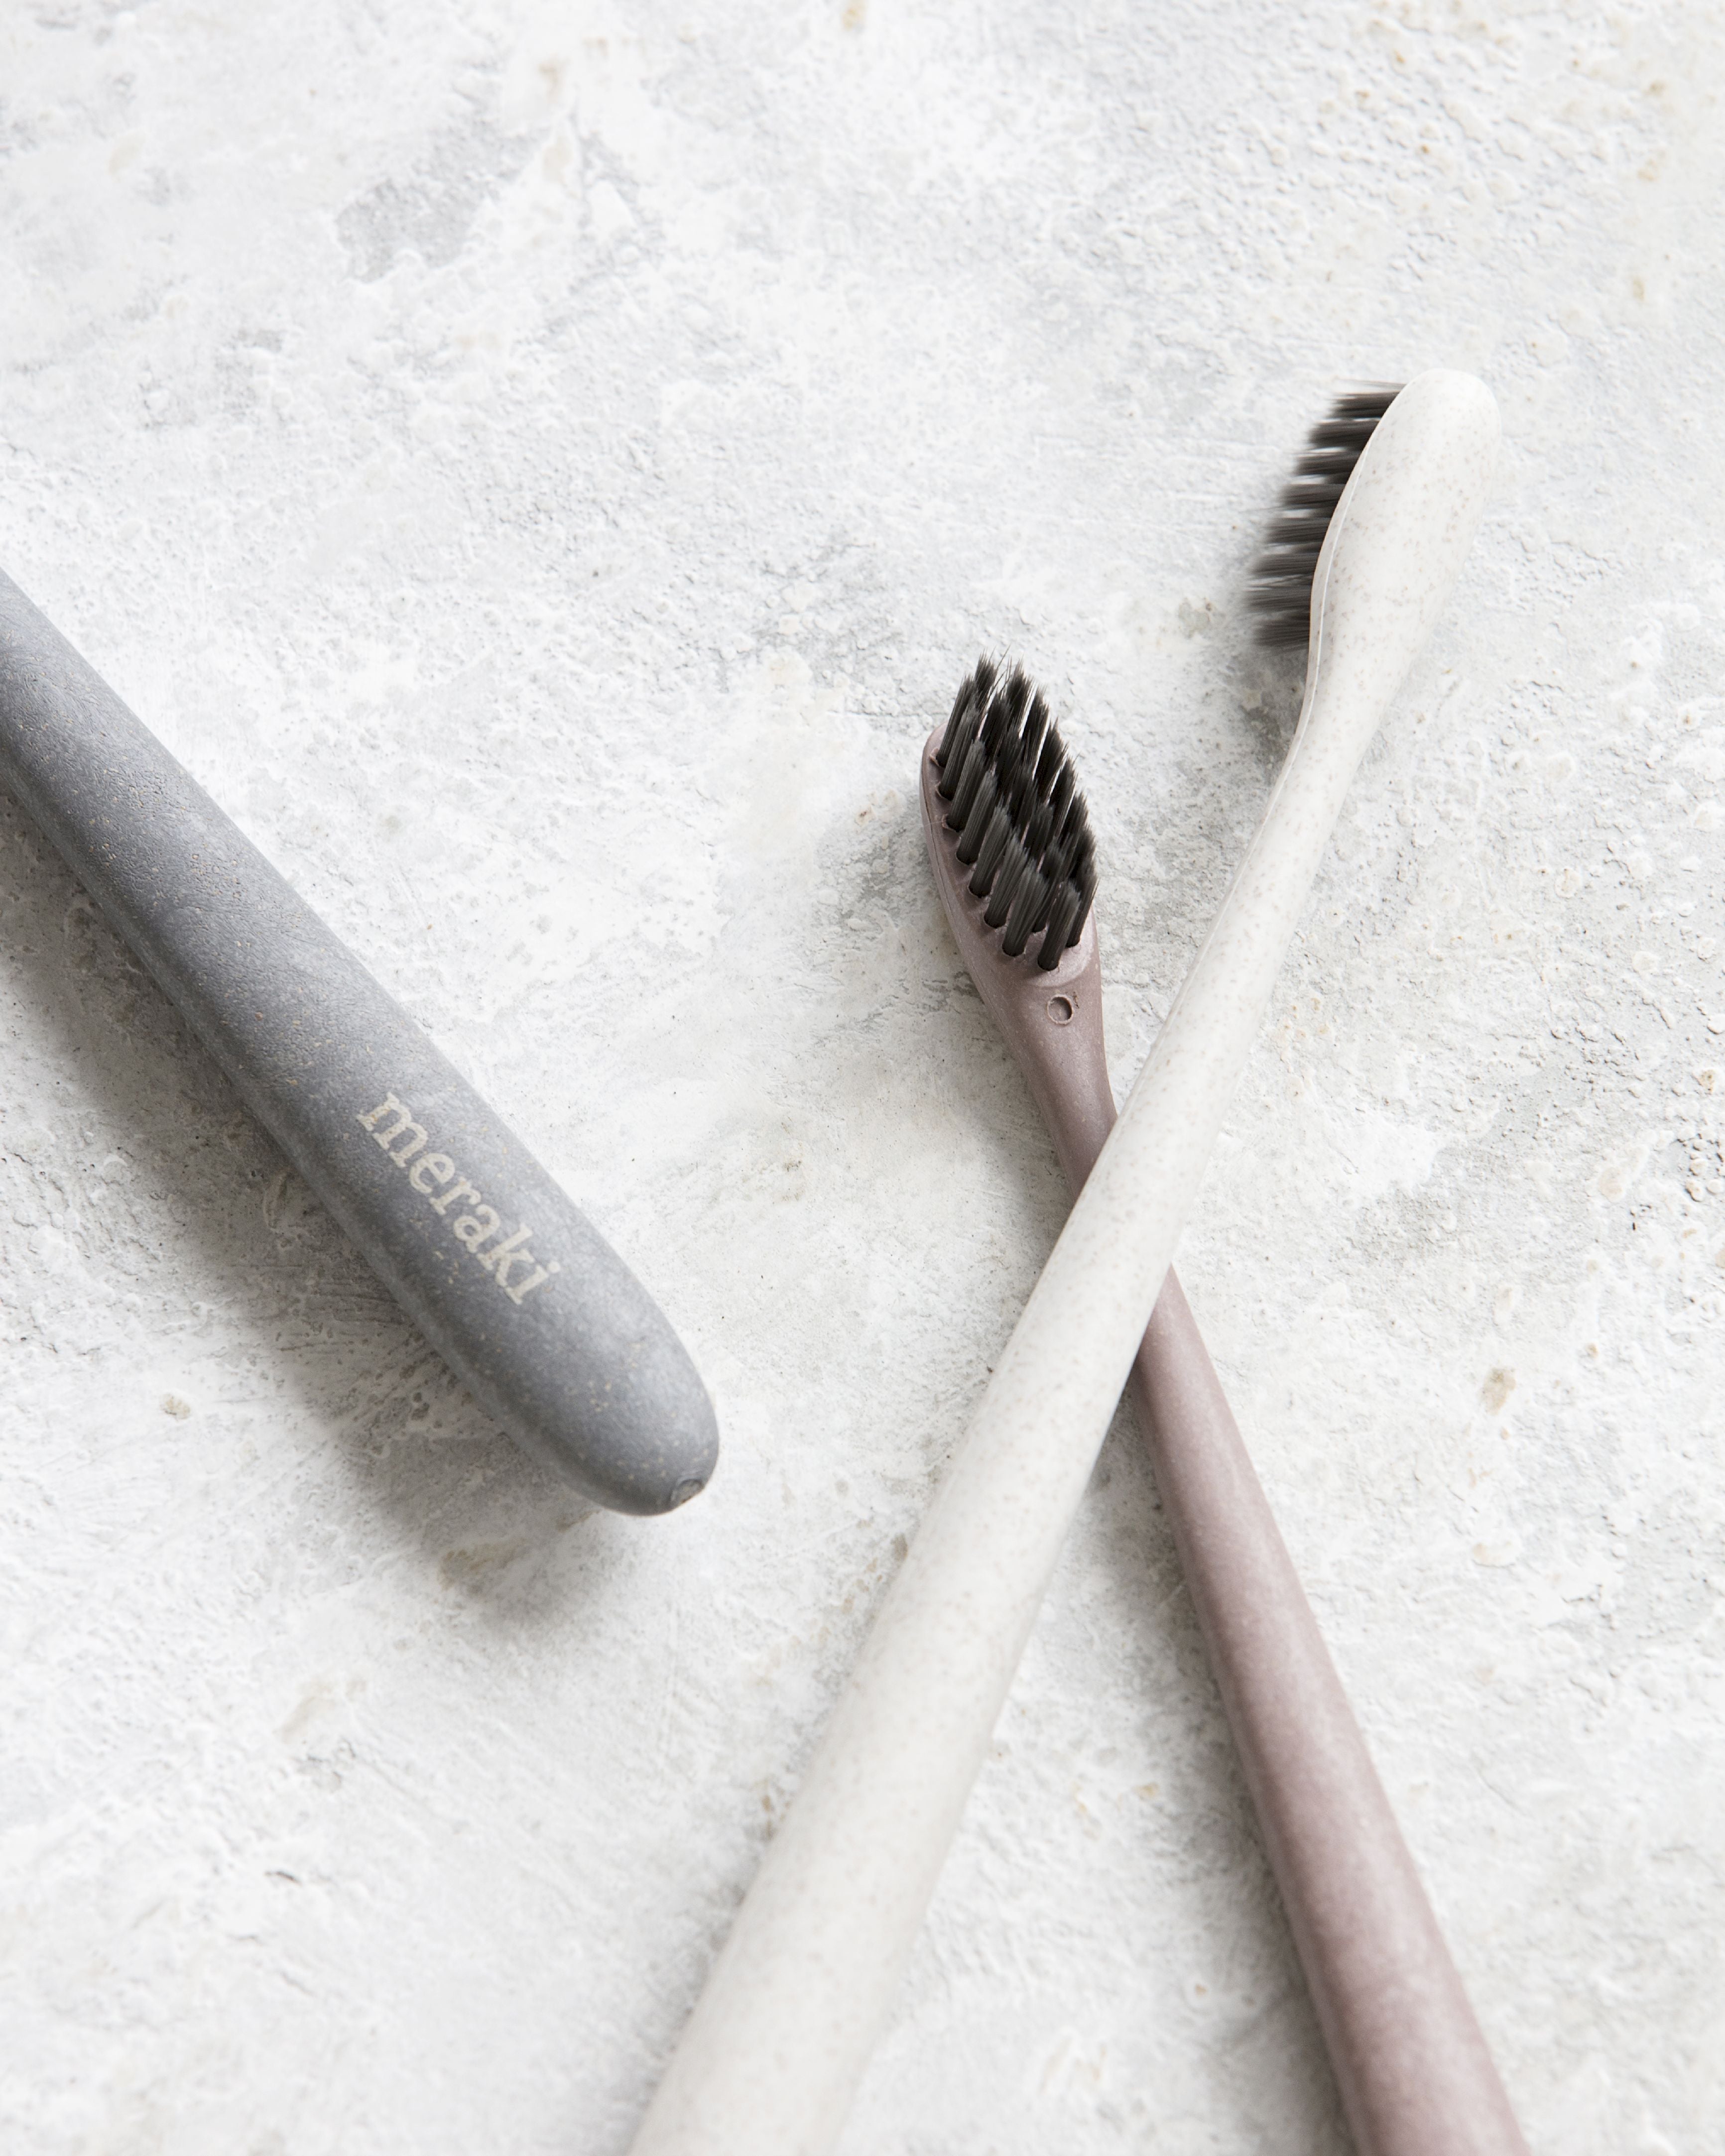 Meraki Toothbrush Set Of 3, Grey/White/Bordeaux